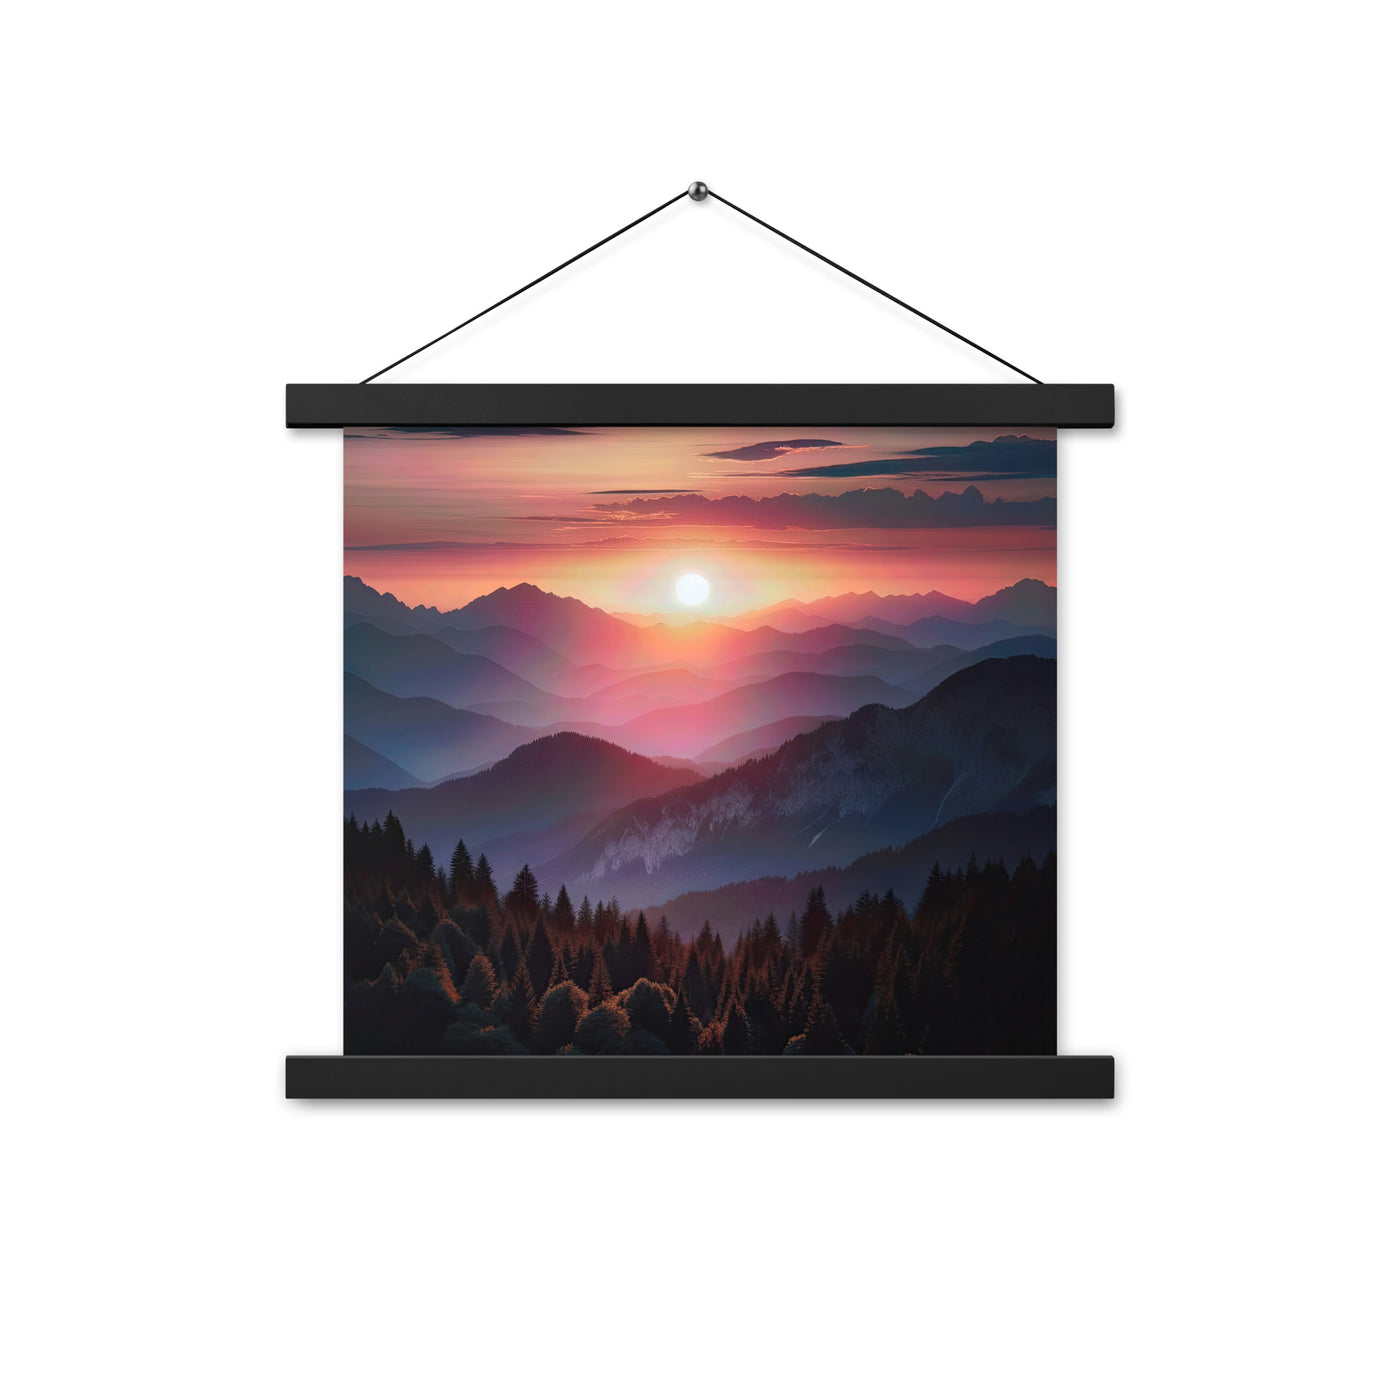 Foto der Alpenwildnis beim Sonnenuntergang, Himmel in warmen Orange-Tönen - Premium Poster mit Aufhängung berge xxx yyy zzz 35.6 x 35.6 cm